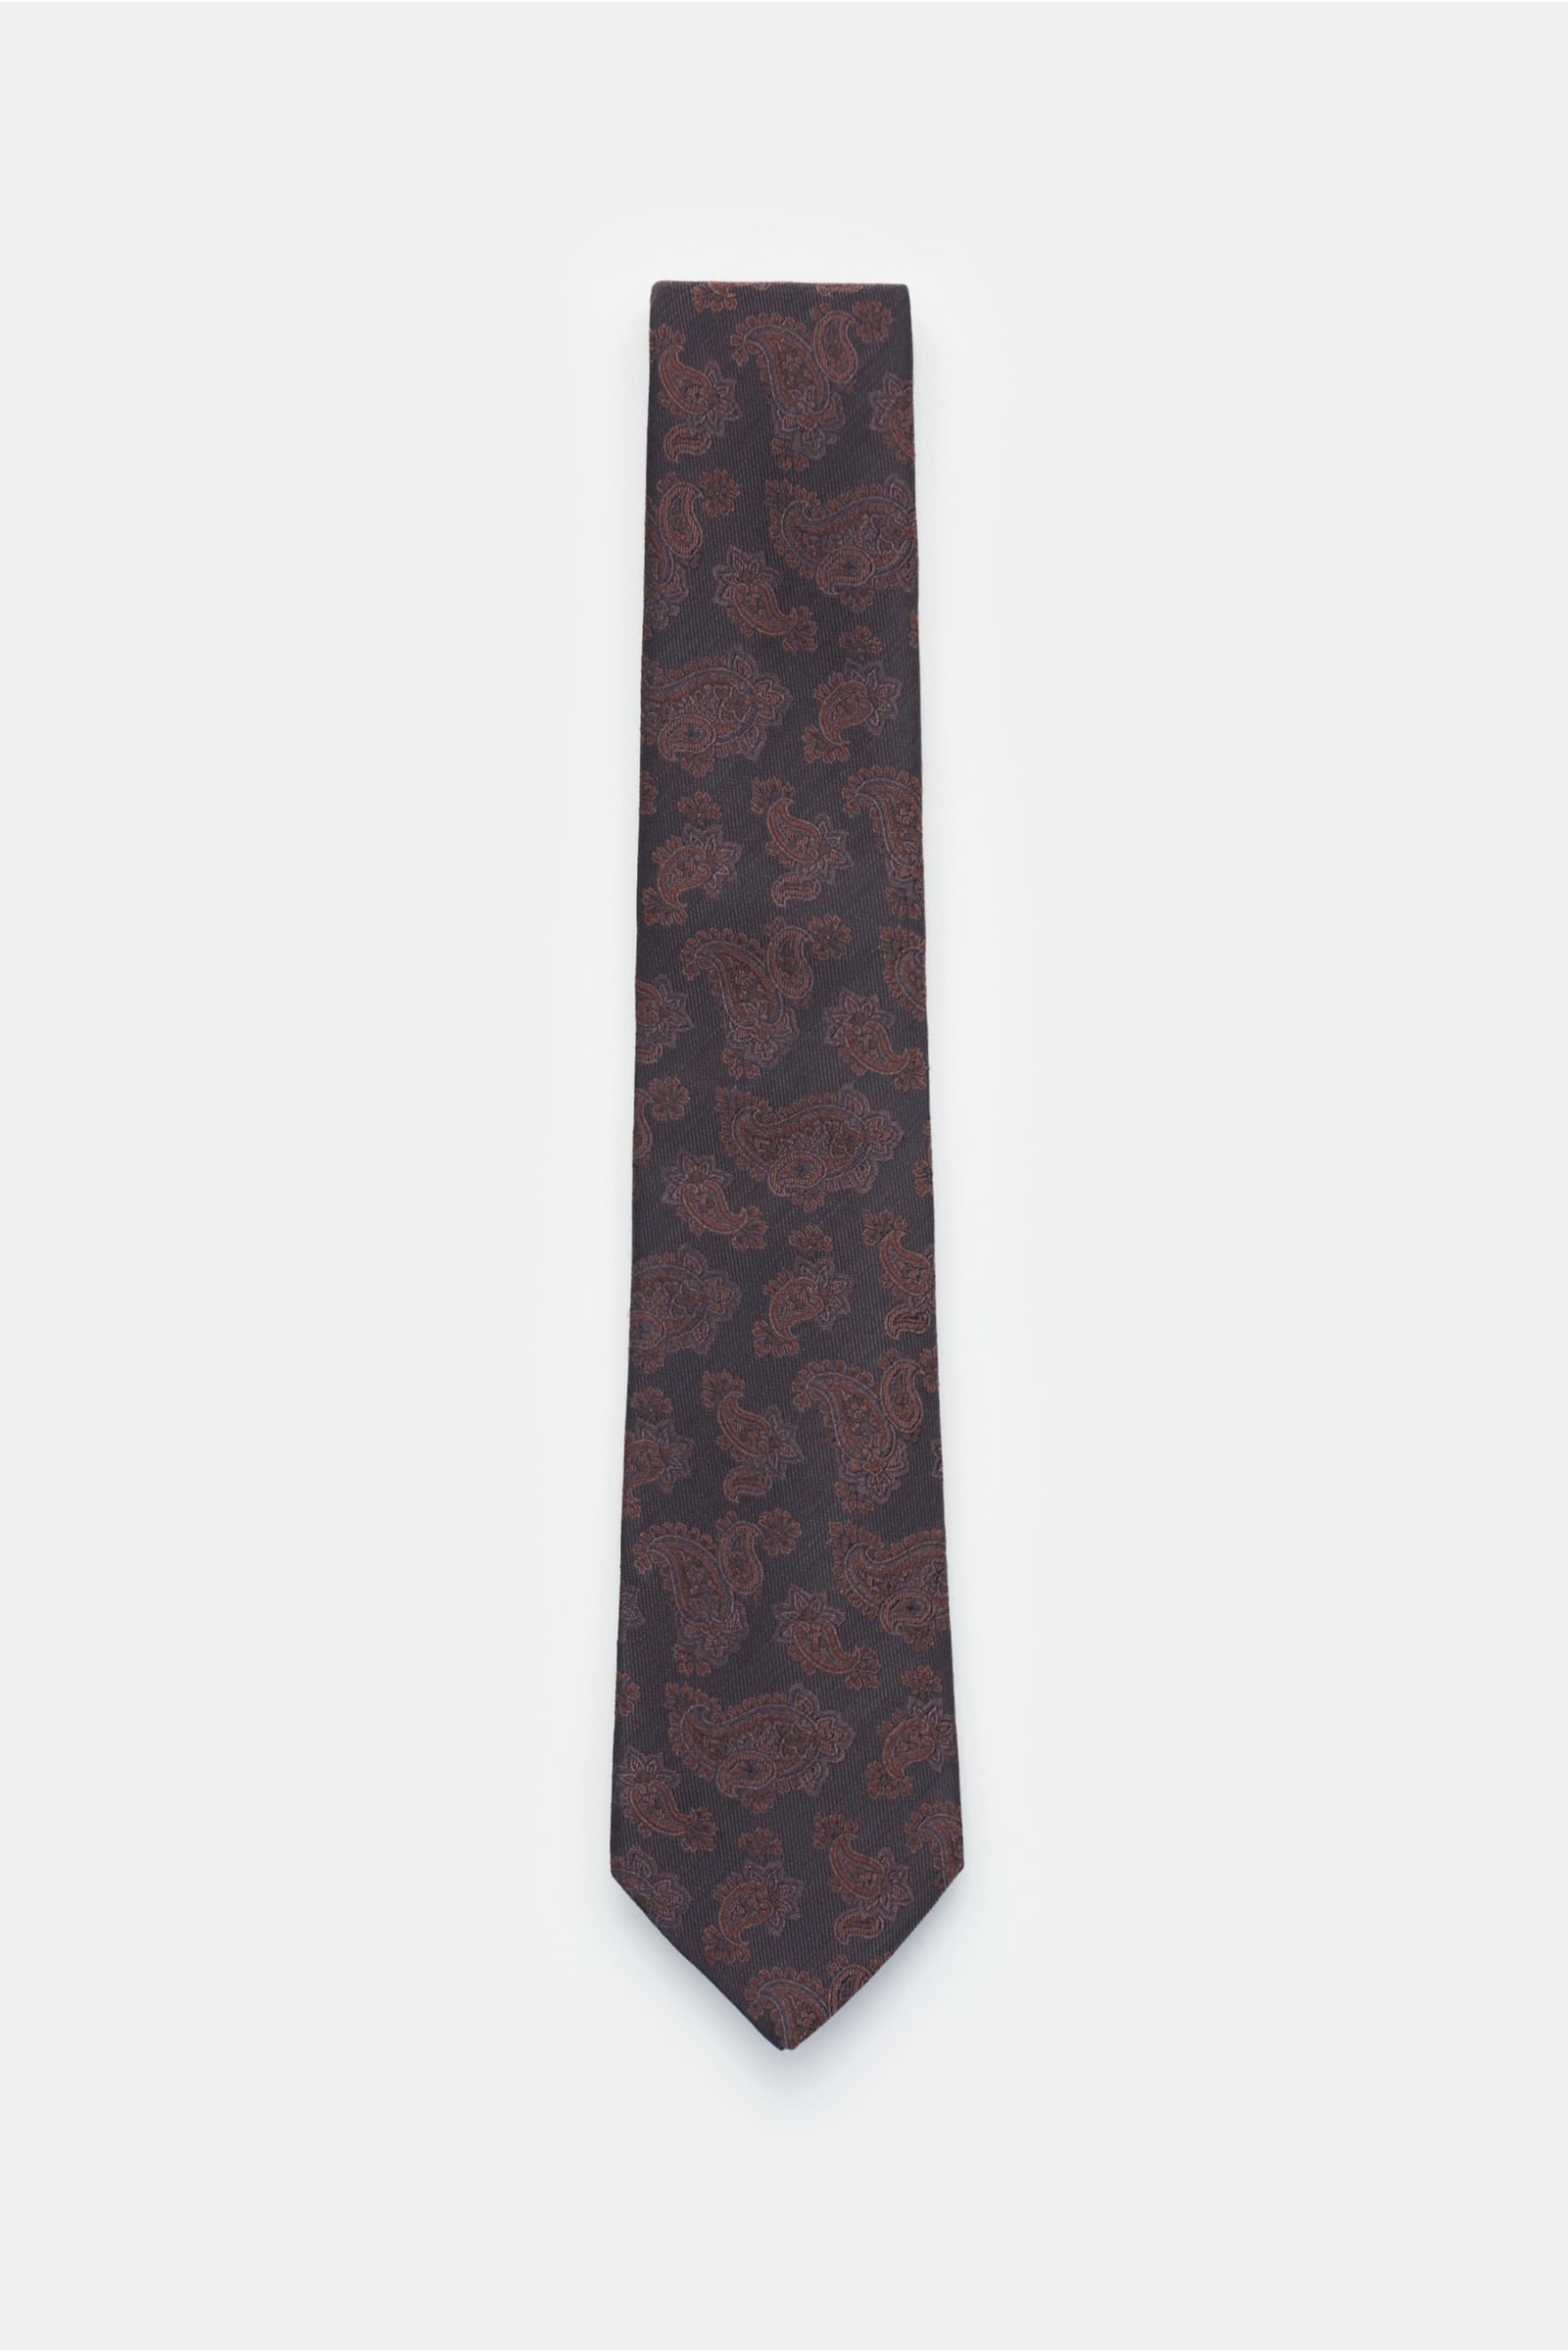 Tie dark brown patterned